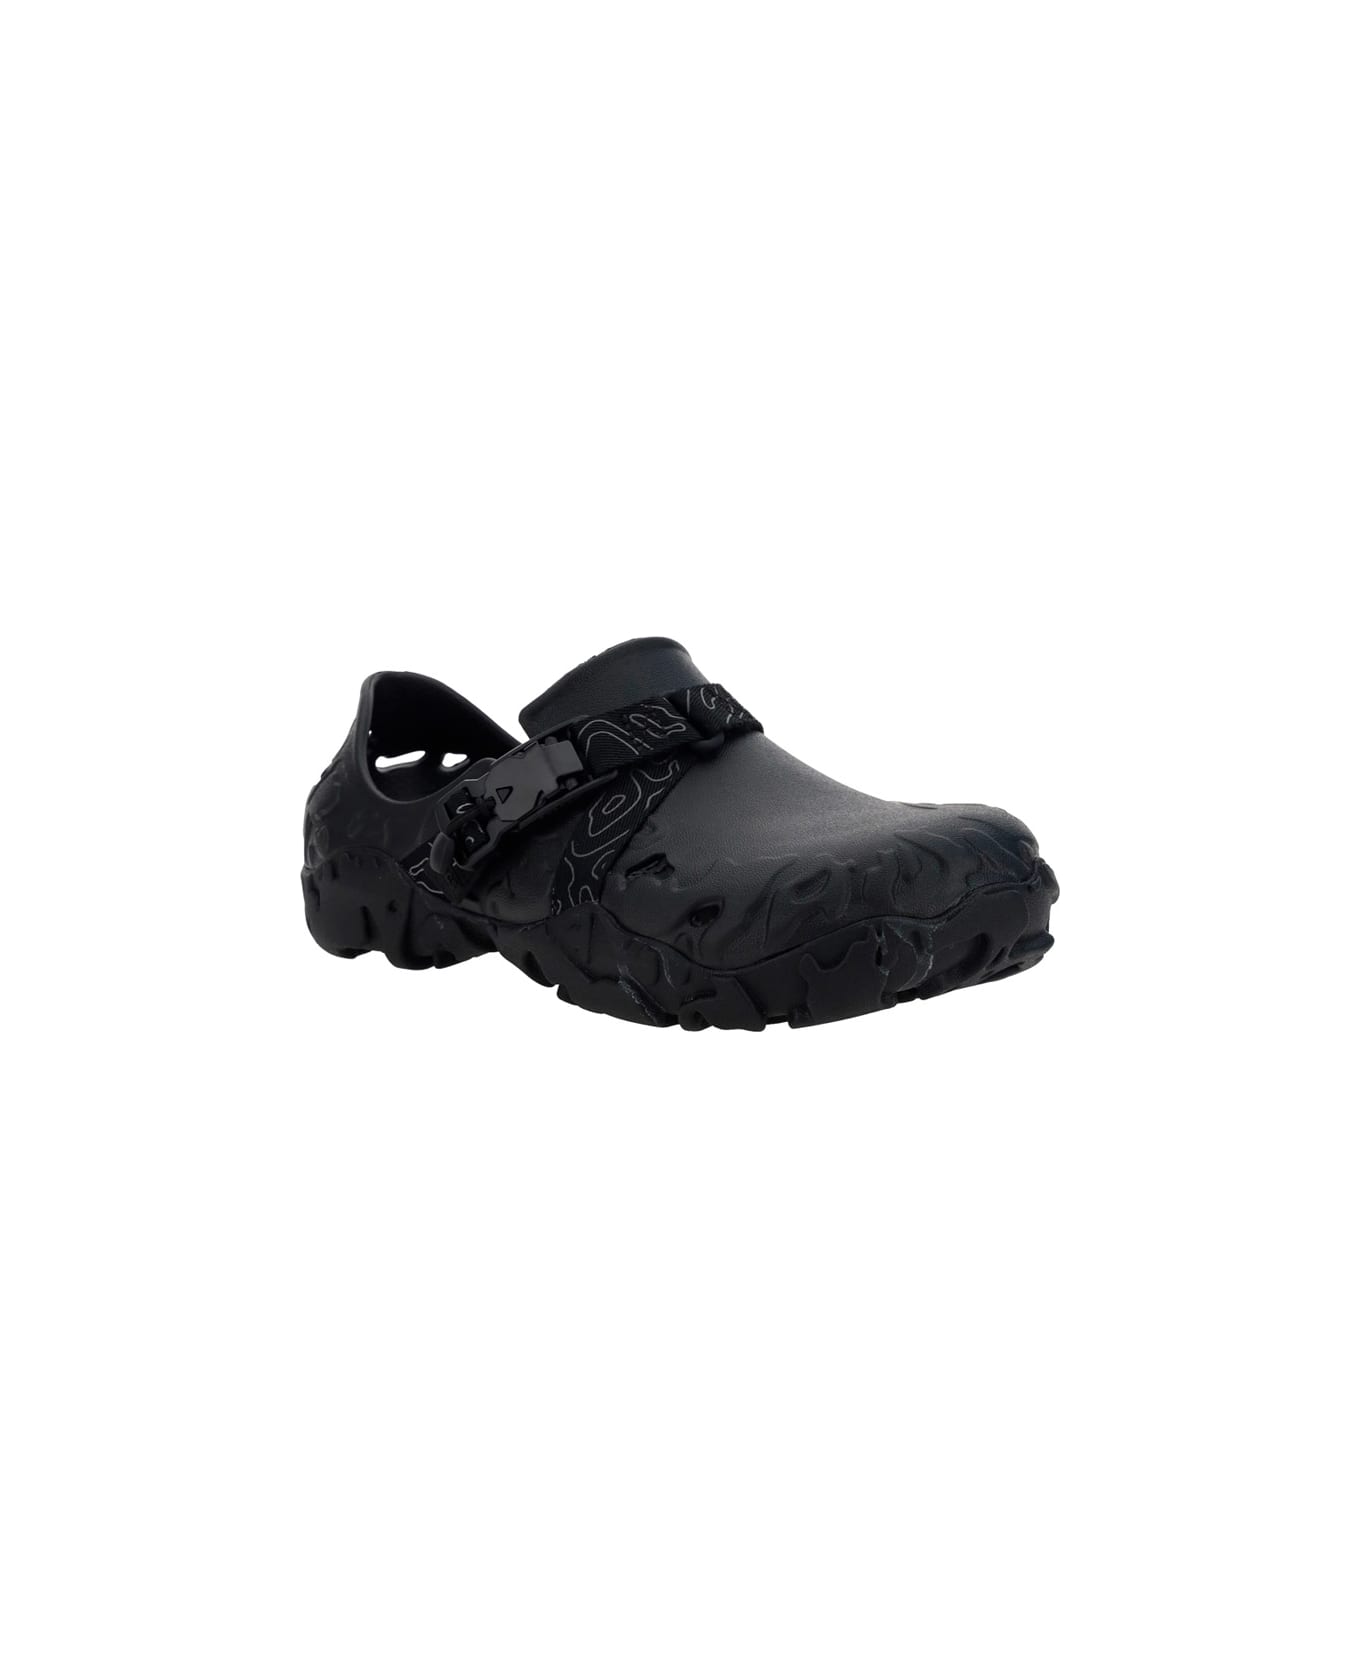 Crocs All Terrain Sandals - Black その他各種シューズ